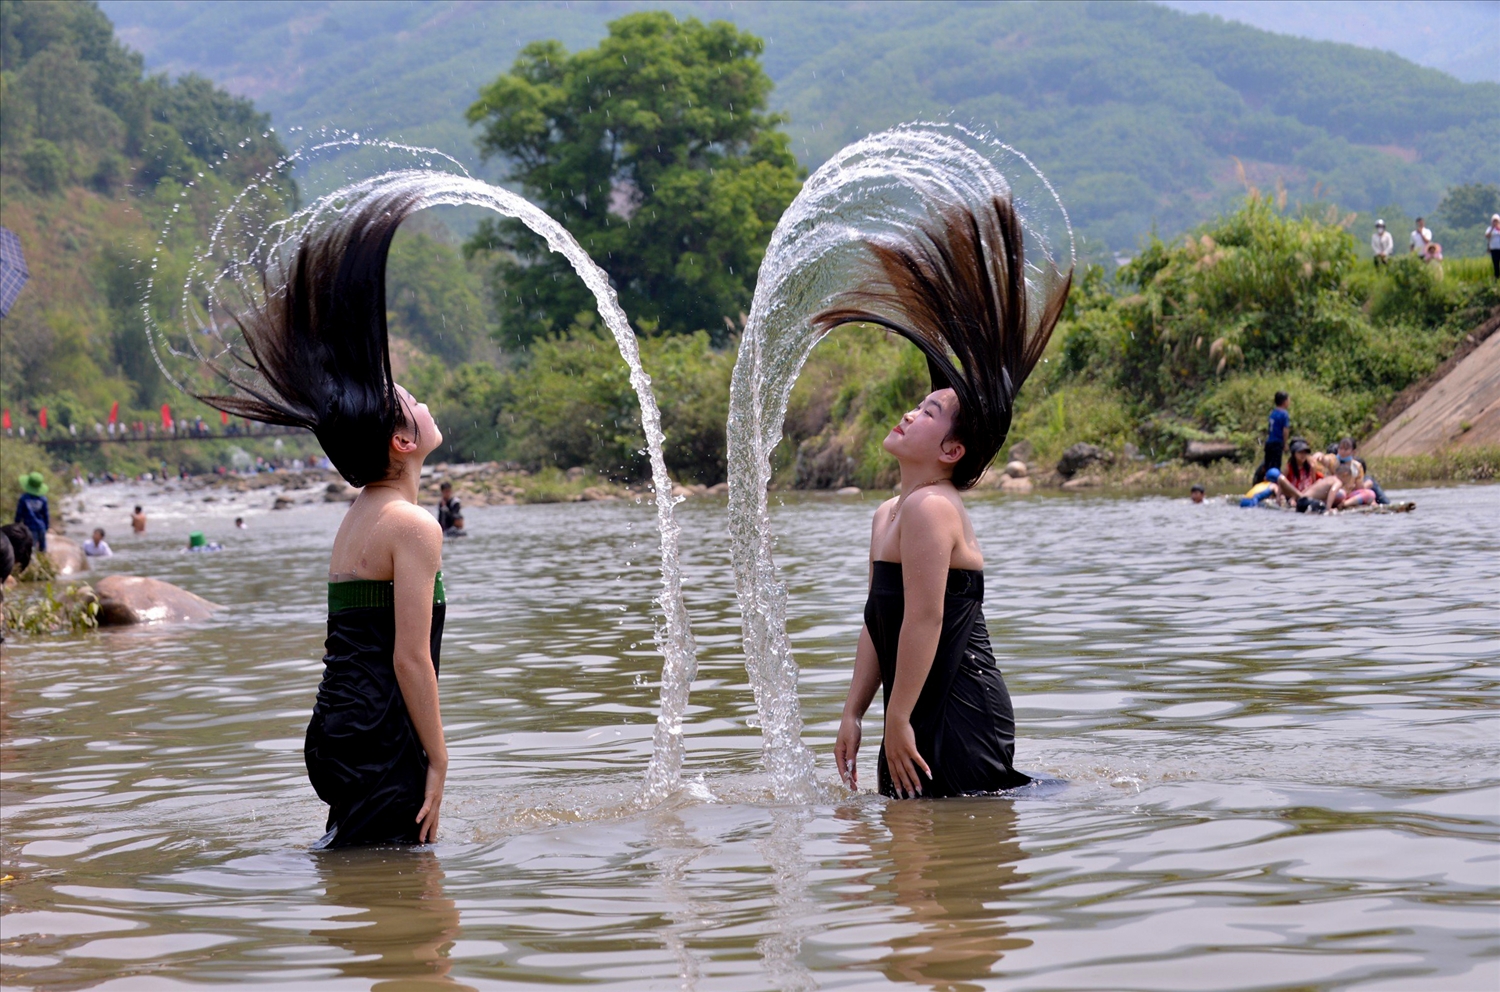 Nụ cười sơn nữ và suối tóc bung tỏa là nét đẹp đặc trưng của các cô gái Thái trắng xứ Mường So, Khổng Lào.